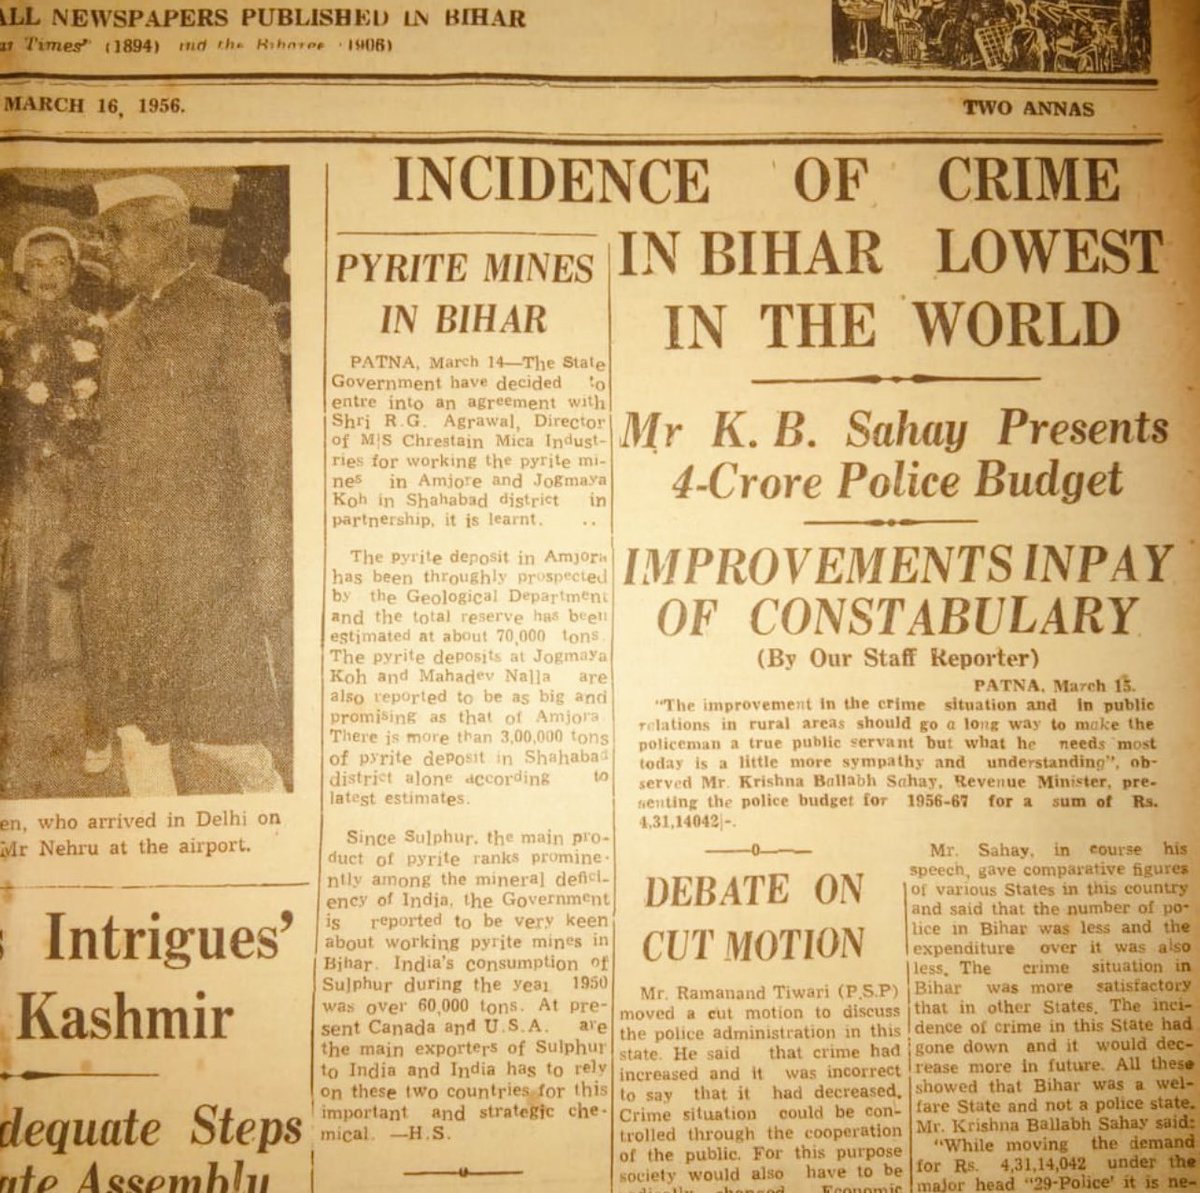 वादे पे तेरे मारा गया बंदा मैं सीधा साधा

16/3/1956 की सर्चलाइट की लीड story है। 
‘#बिहार में अपराध की दर दुनिया में सबसे कम’
वित्तमंत्री KB सहाय ने 4 करोड़ का #पुलिस बजट पेश करते हुए ये दावा किया।सोचिये जब सोना 91रु/10 ग्राम था तब 4 Cr का सिर्फ पुलिस बजट पेश होता था।आज? #Bihar